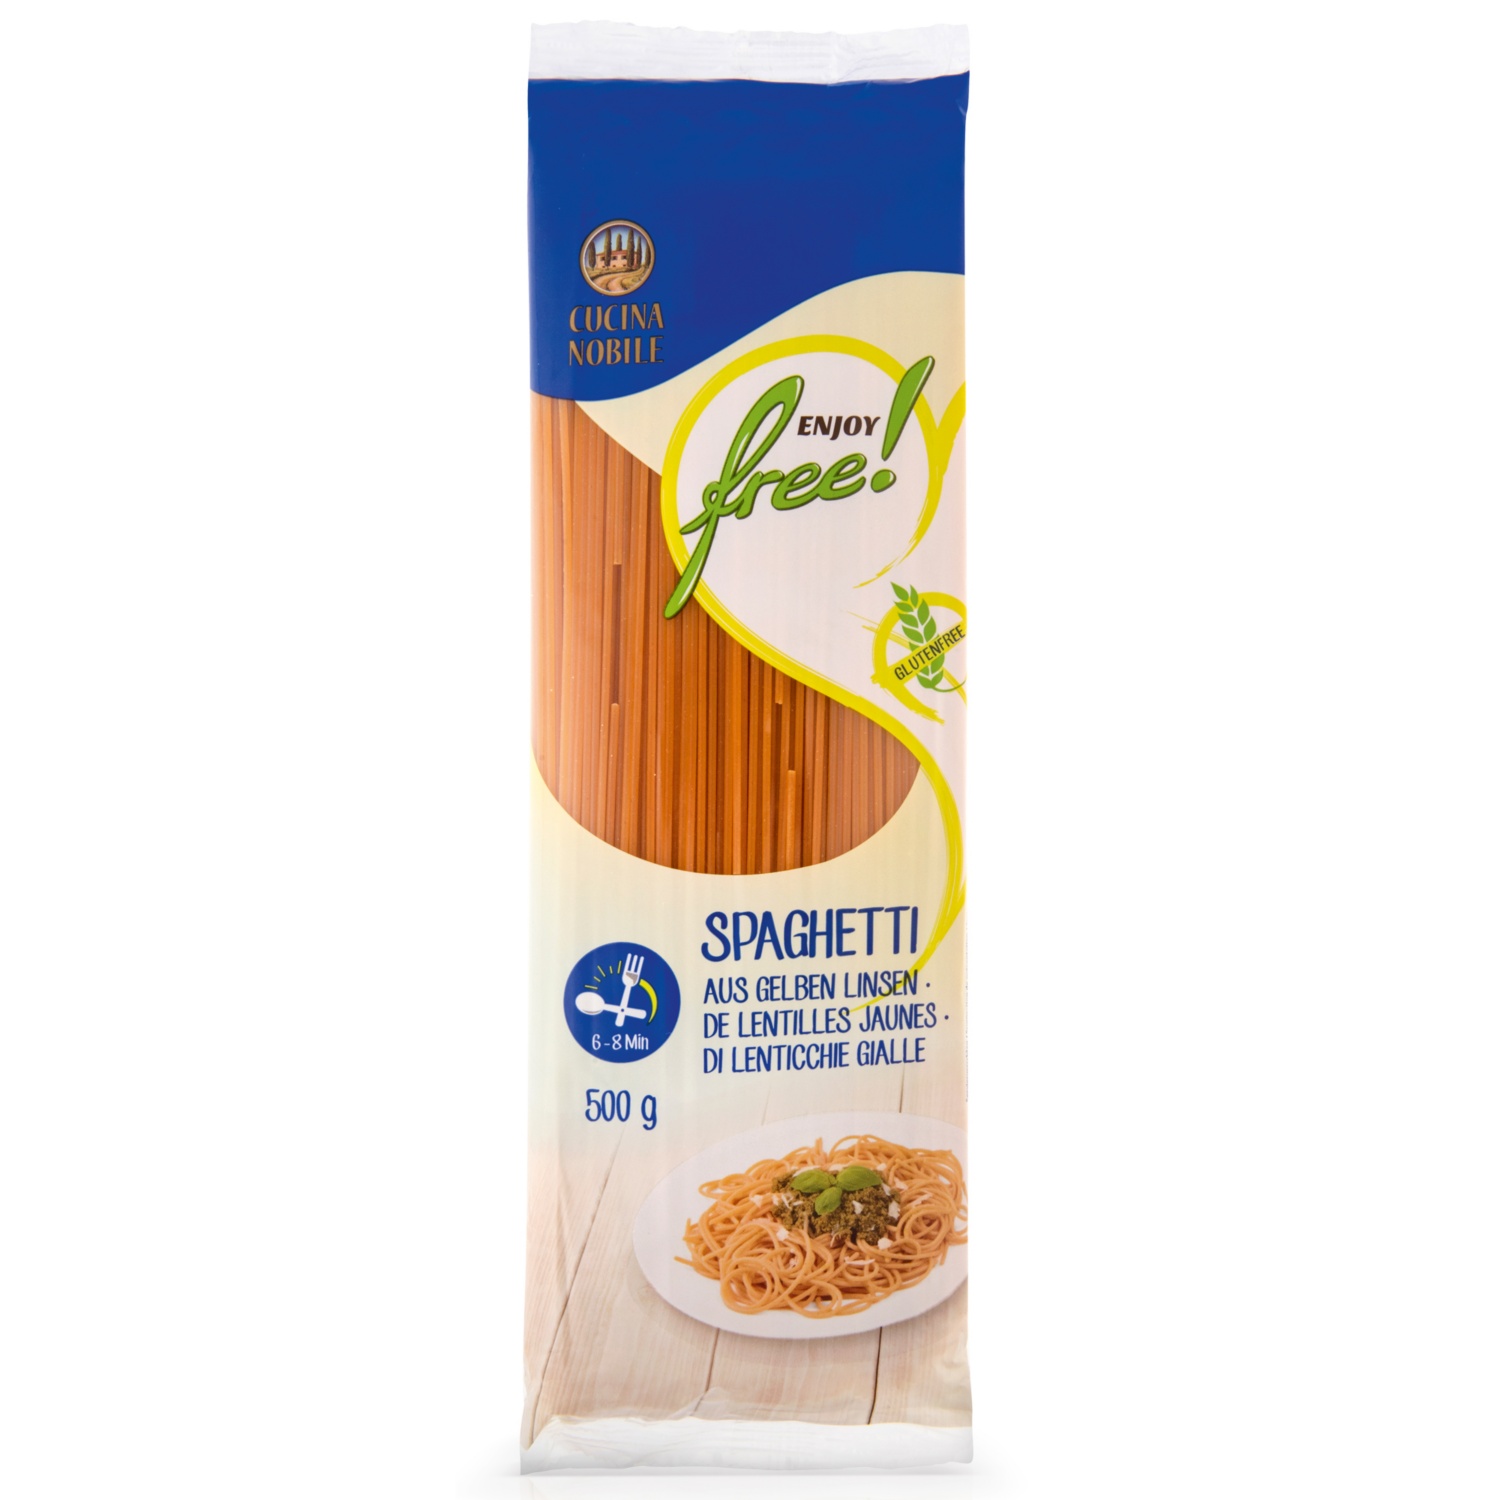 ENJOY FREE! Zelenjavne testenine, špageti iz rumene leče